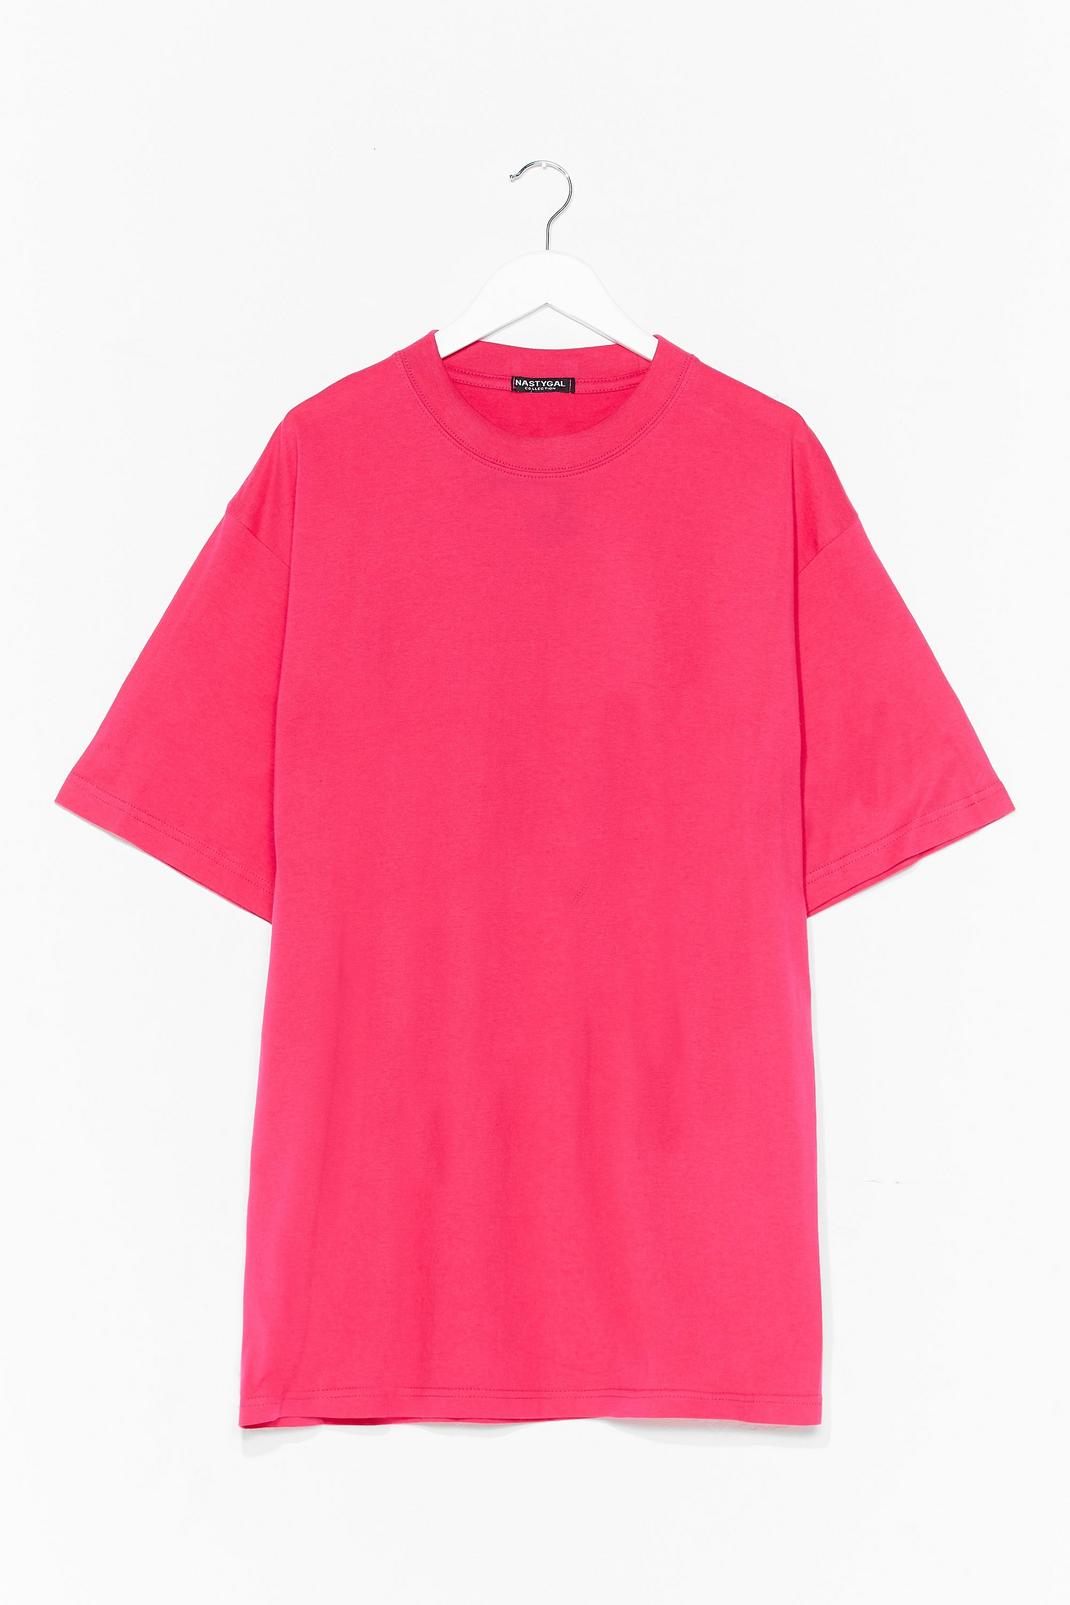 Hot pink Oversized Basic Short Sleeve T-Shirt image number 1